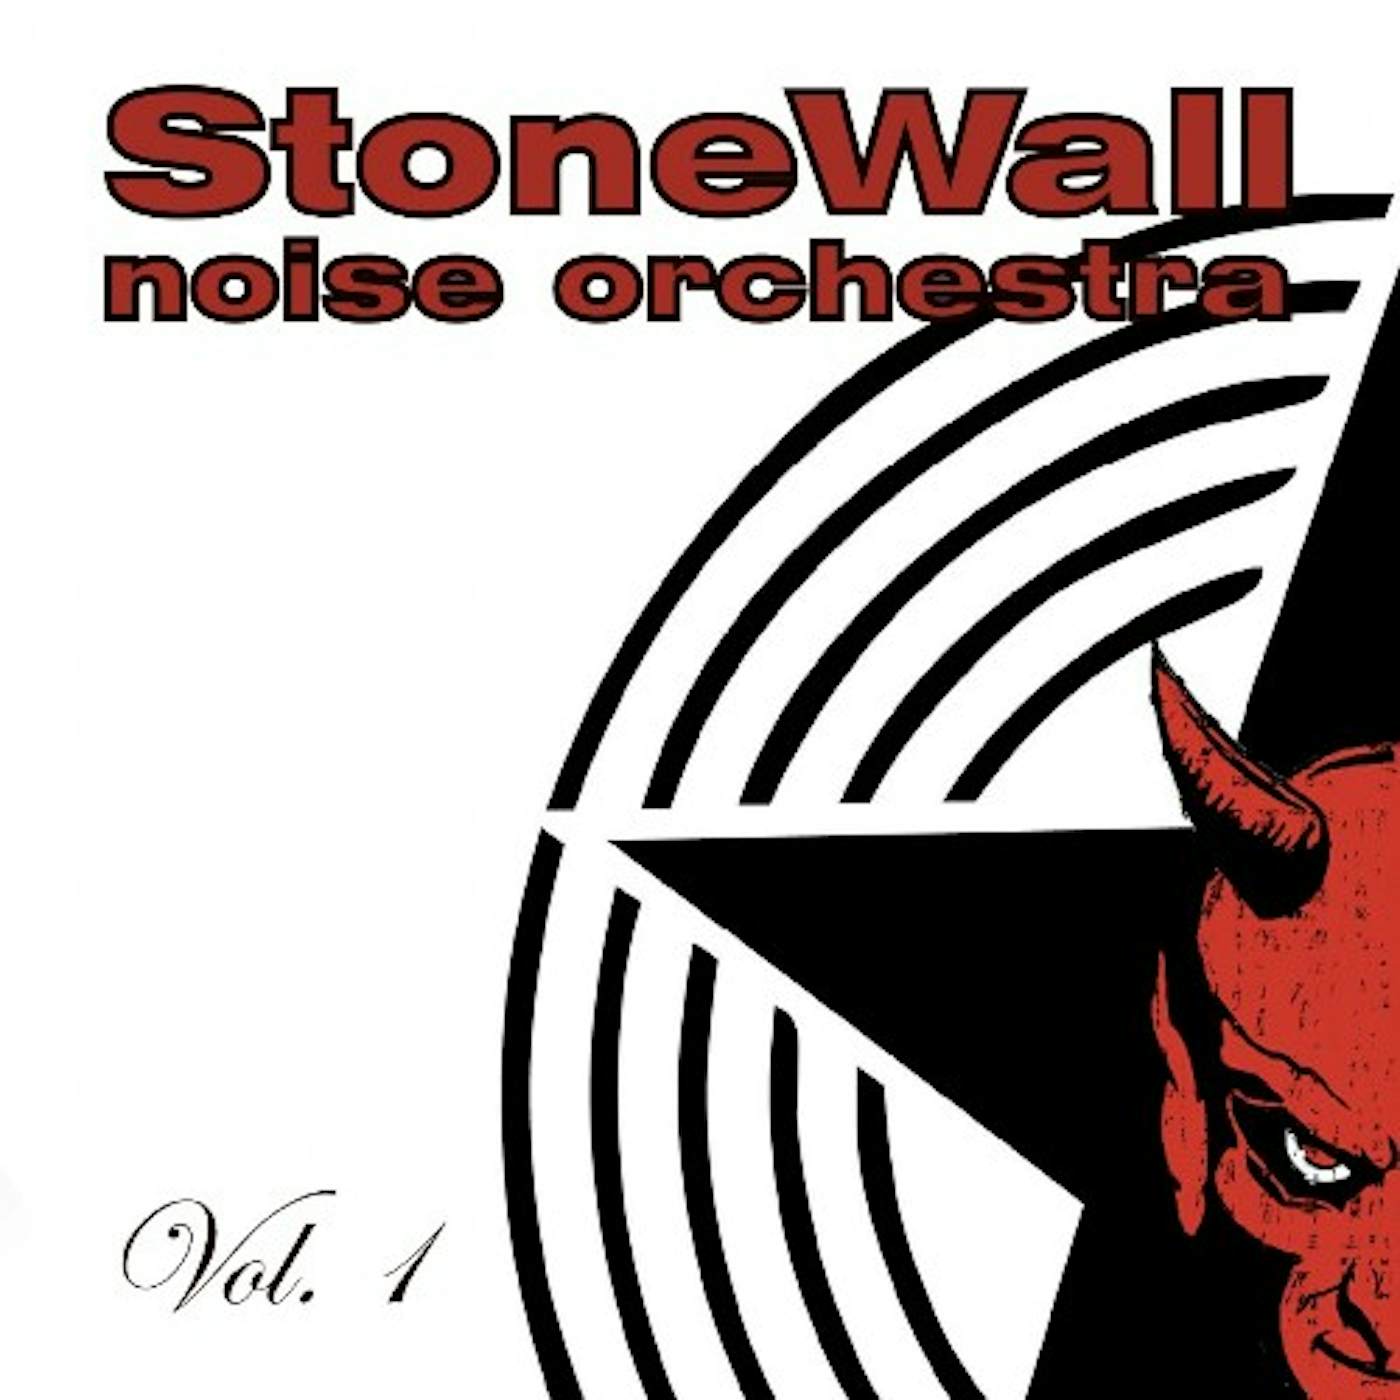 STONEWALL NOISE ORCHESTRA VOL. 1 (BABY BLUE VINYL) Vinyl Record